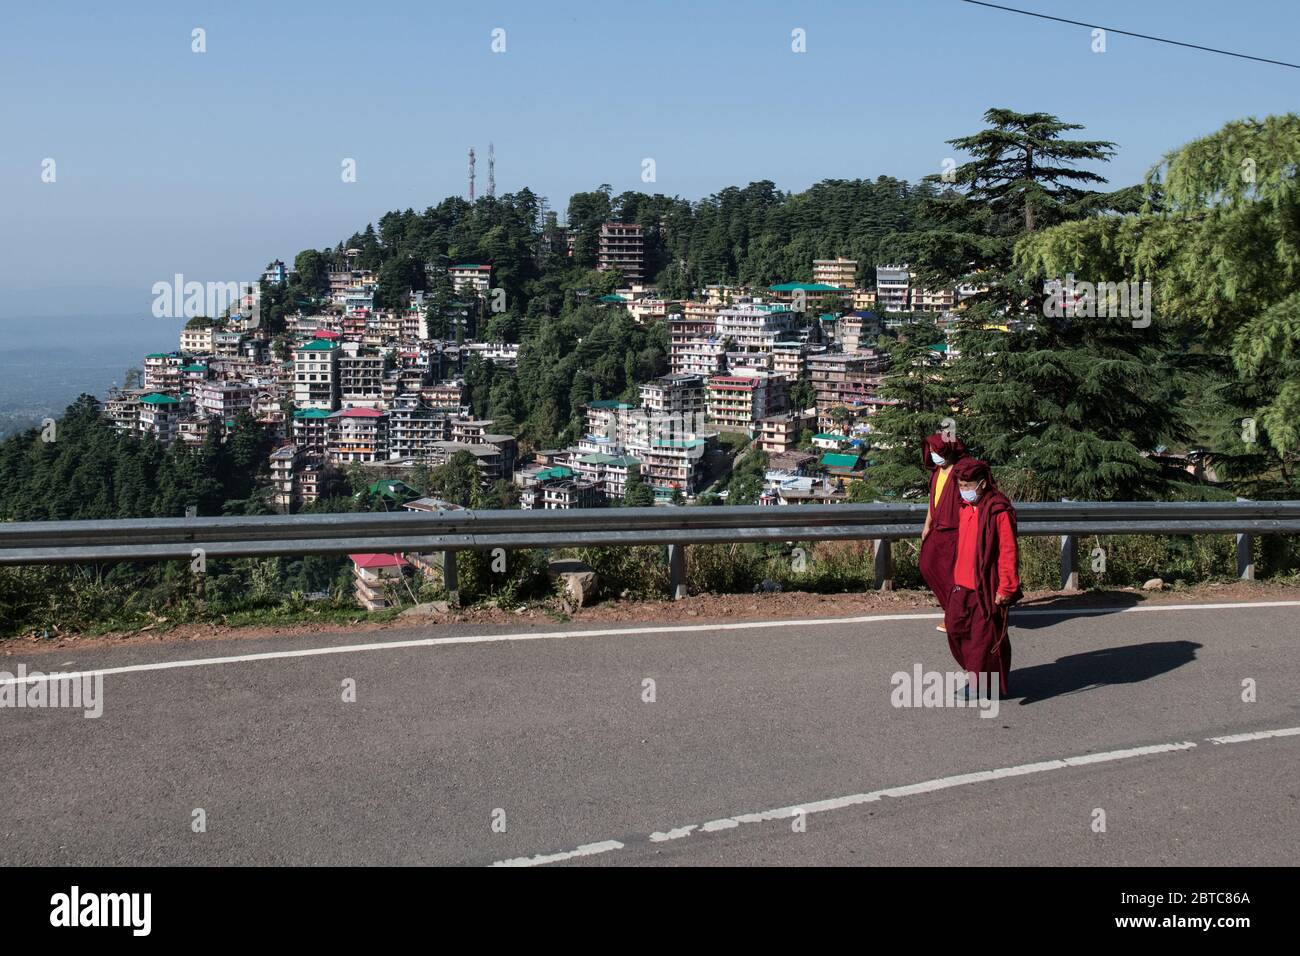 Monaci tibetani che indossano maschere protettive e la distanza sociale come precauzione per prevenire la diffusione del coronavirus COVID 19. Dharamshala, India. Foto Stock